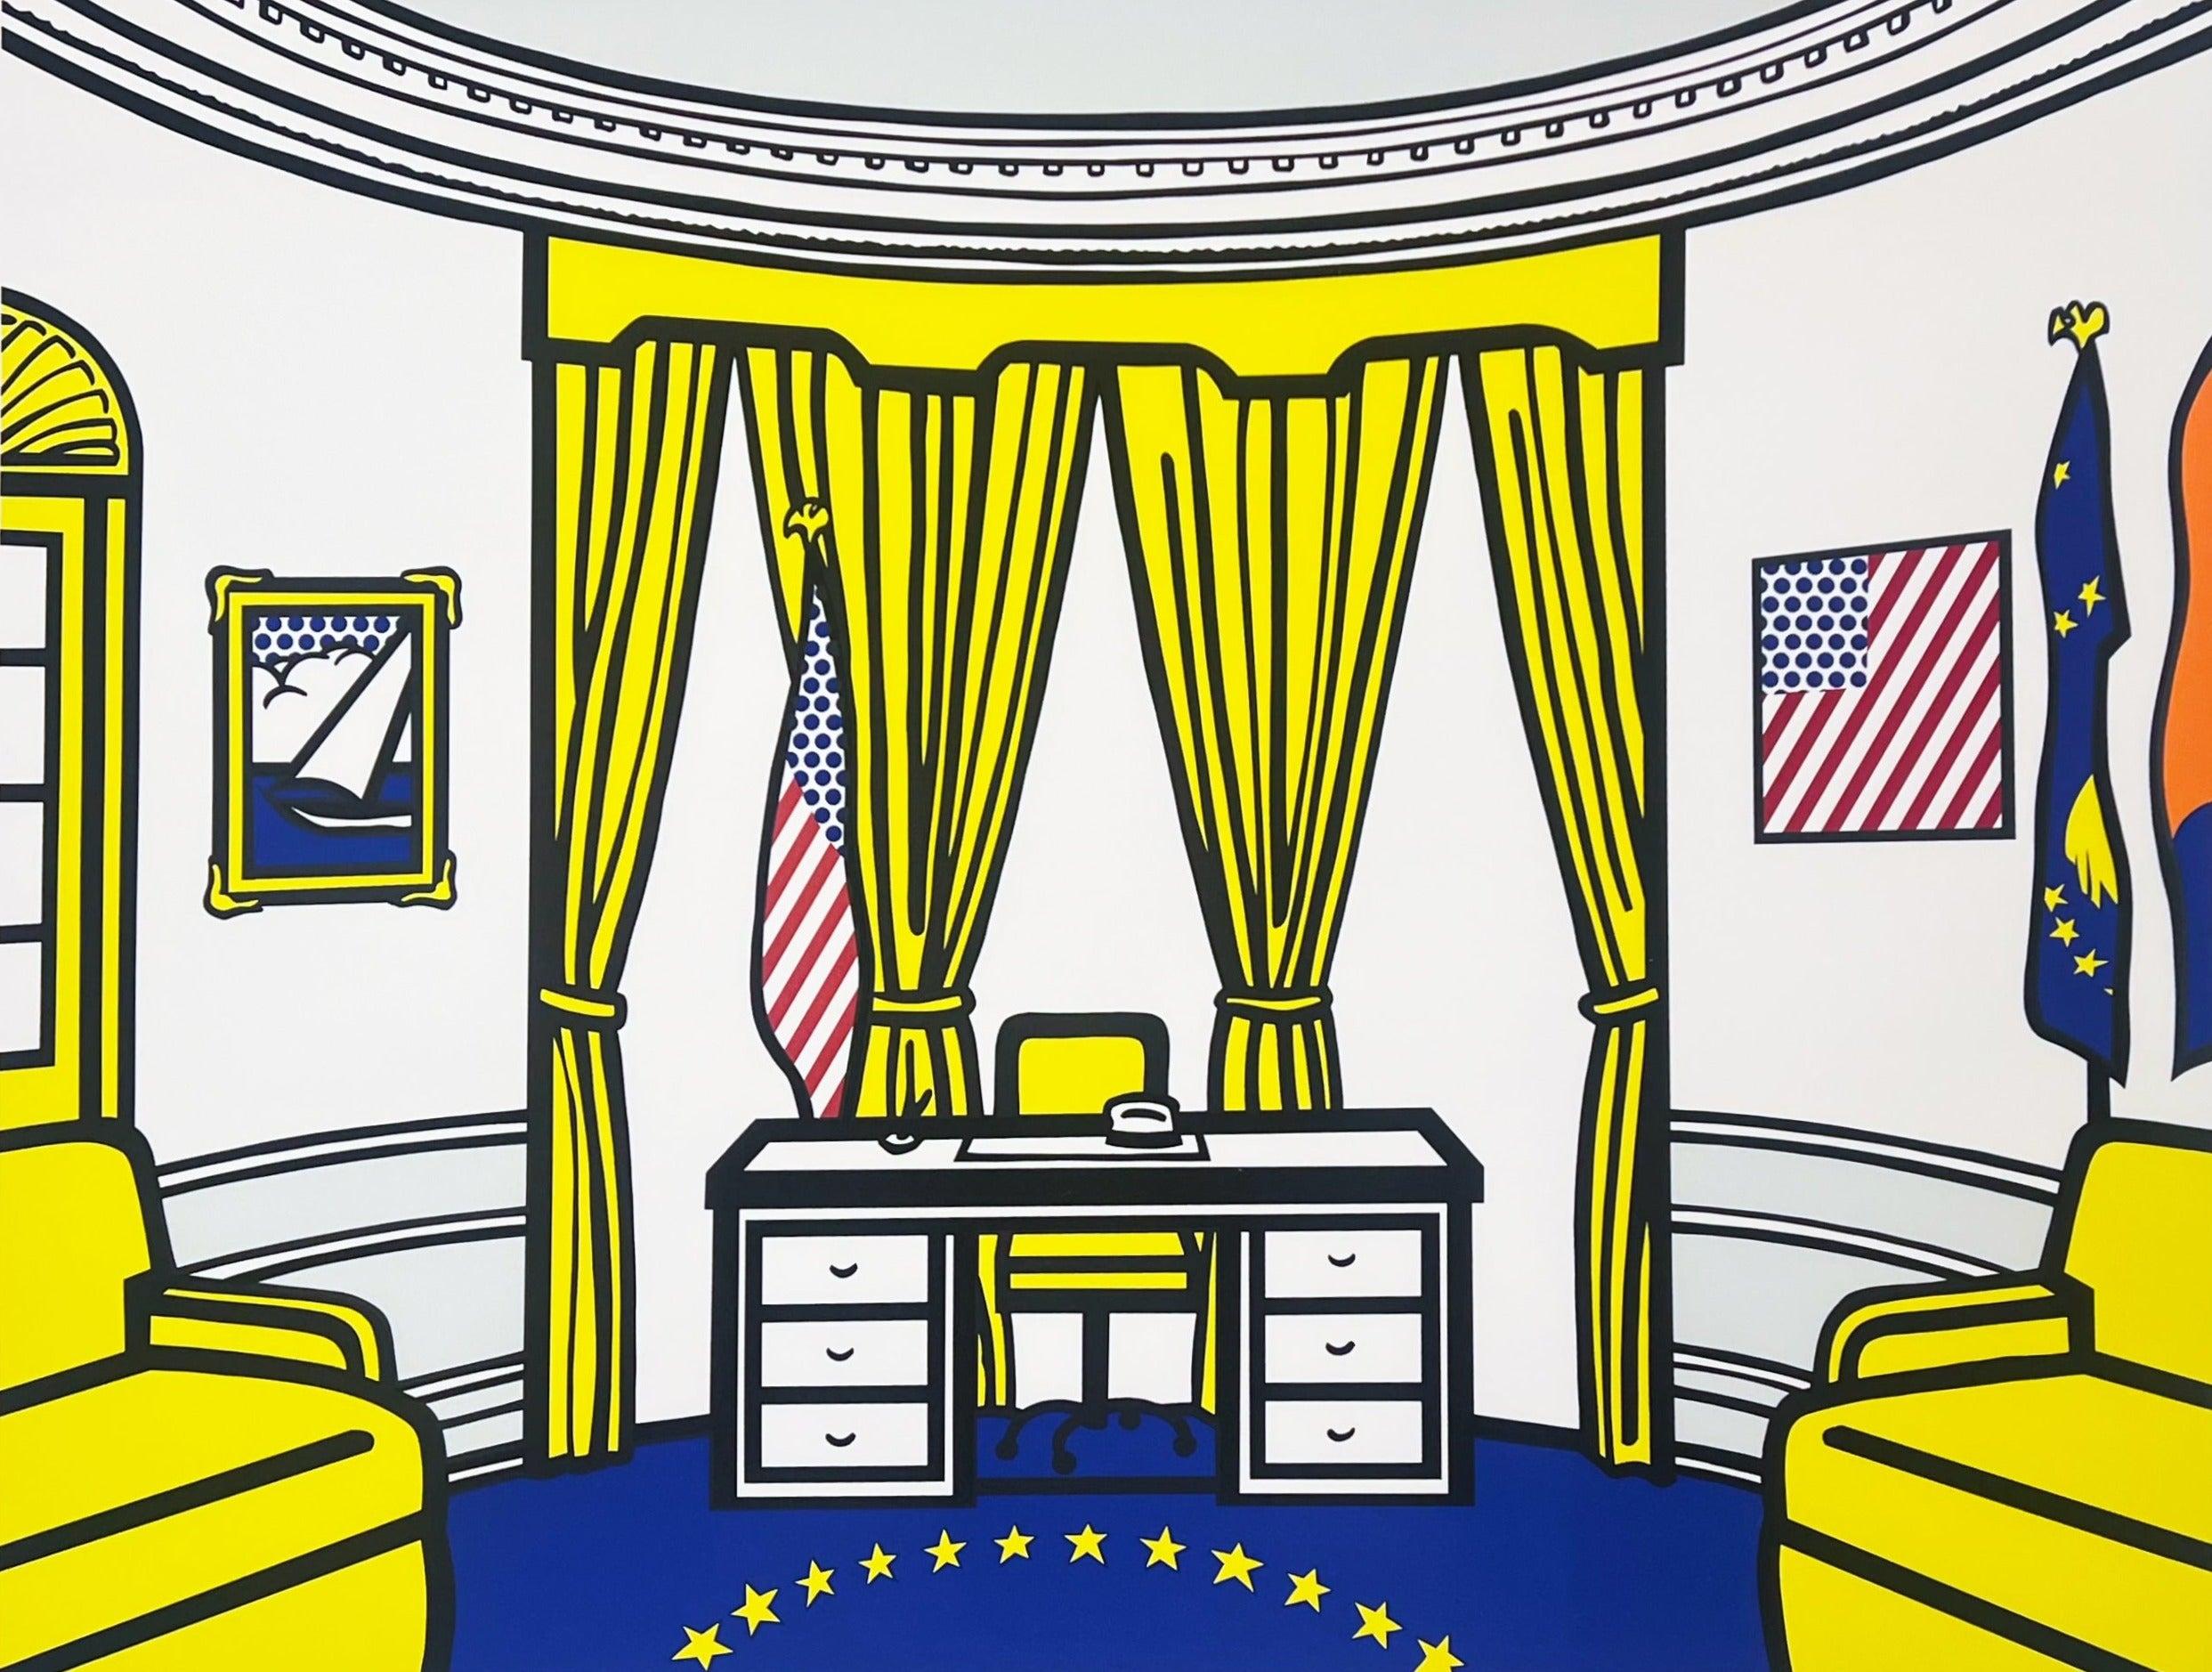 Roy Lichtenstein Interior Print - Oval Office